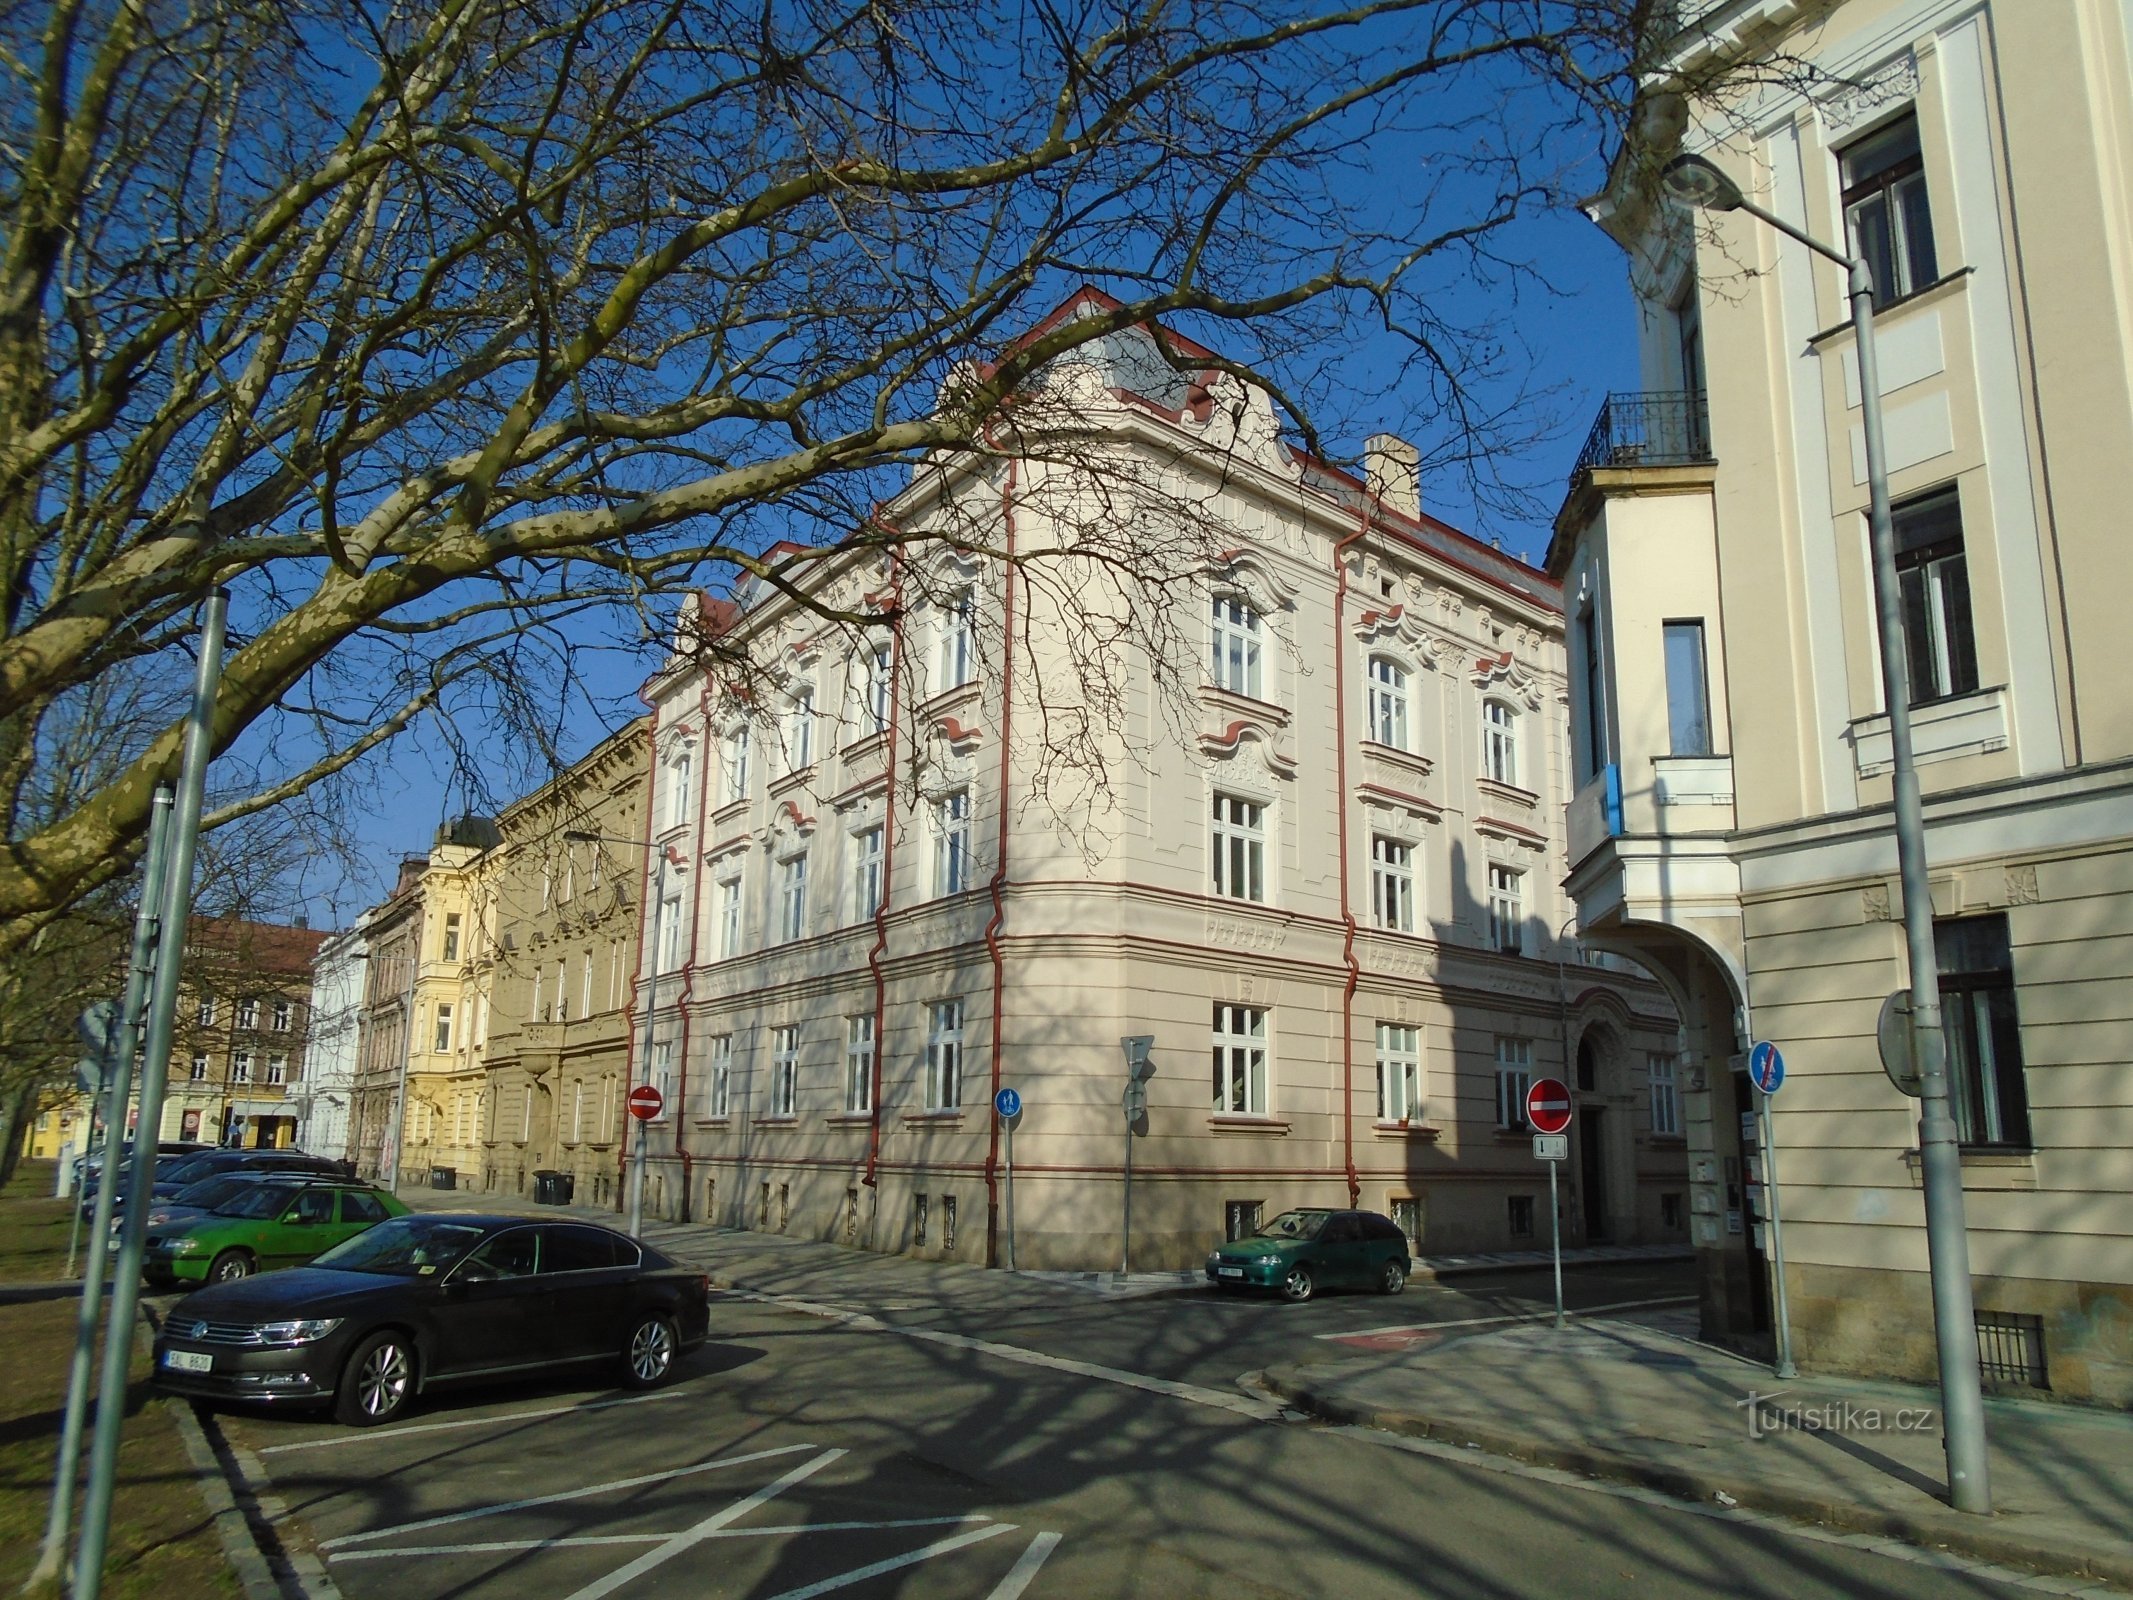 Corner of Eliščina nábřeží and Chmelovy Street (Hradec Králové, 1.4.2018 April XNUMX)